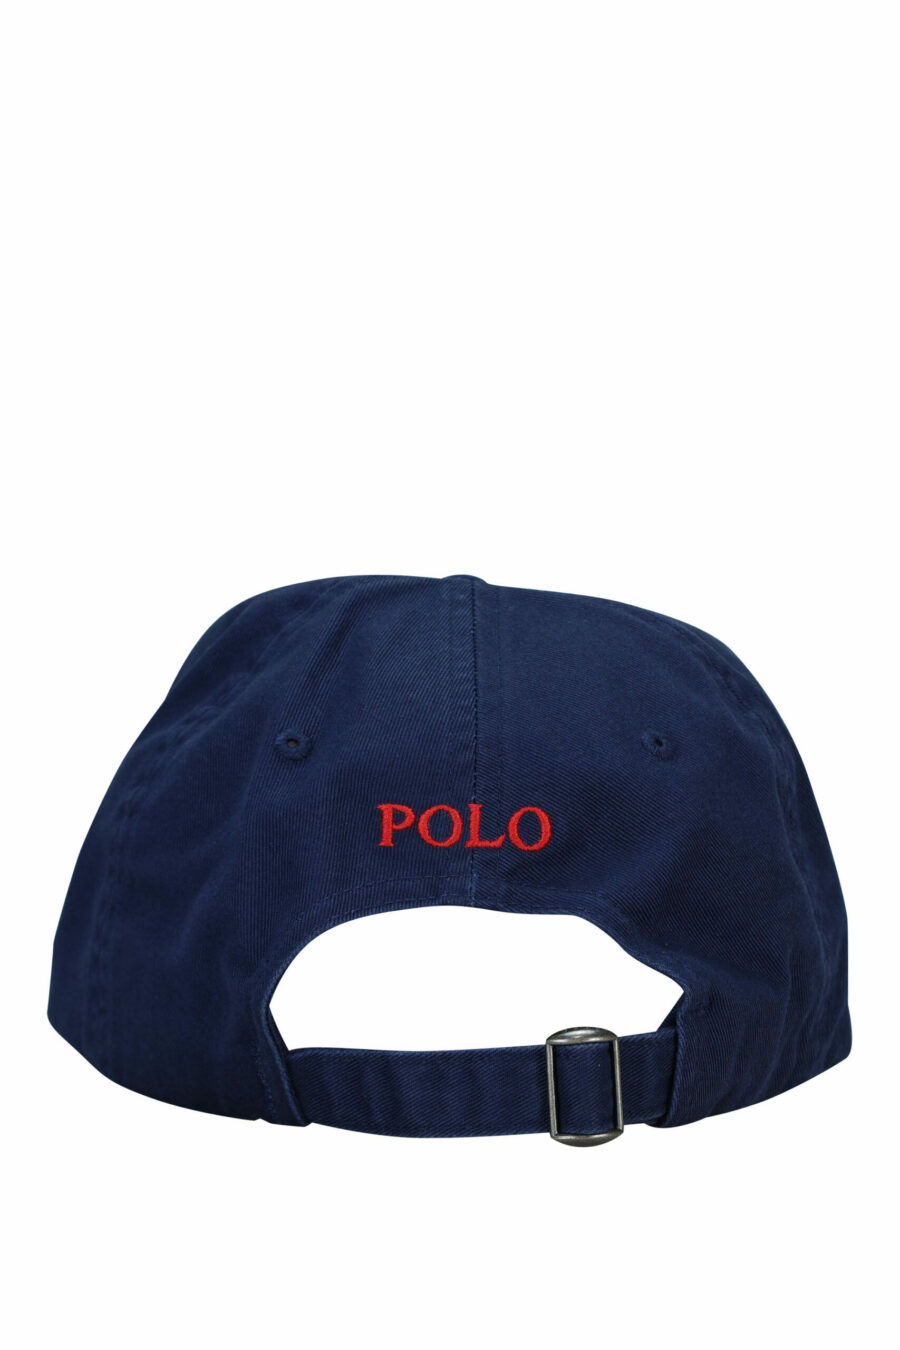 Casquette bleu foncé avec mini-logo "polo" - 3616531139422 à l'échelle 1